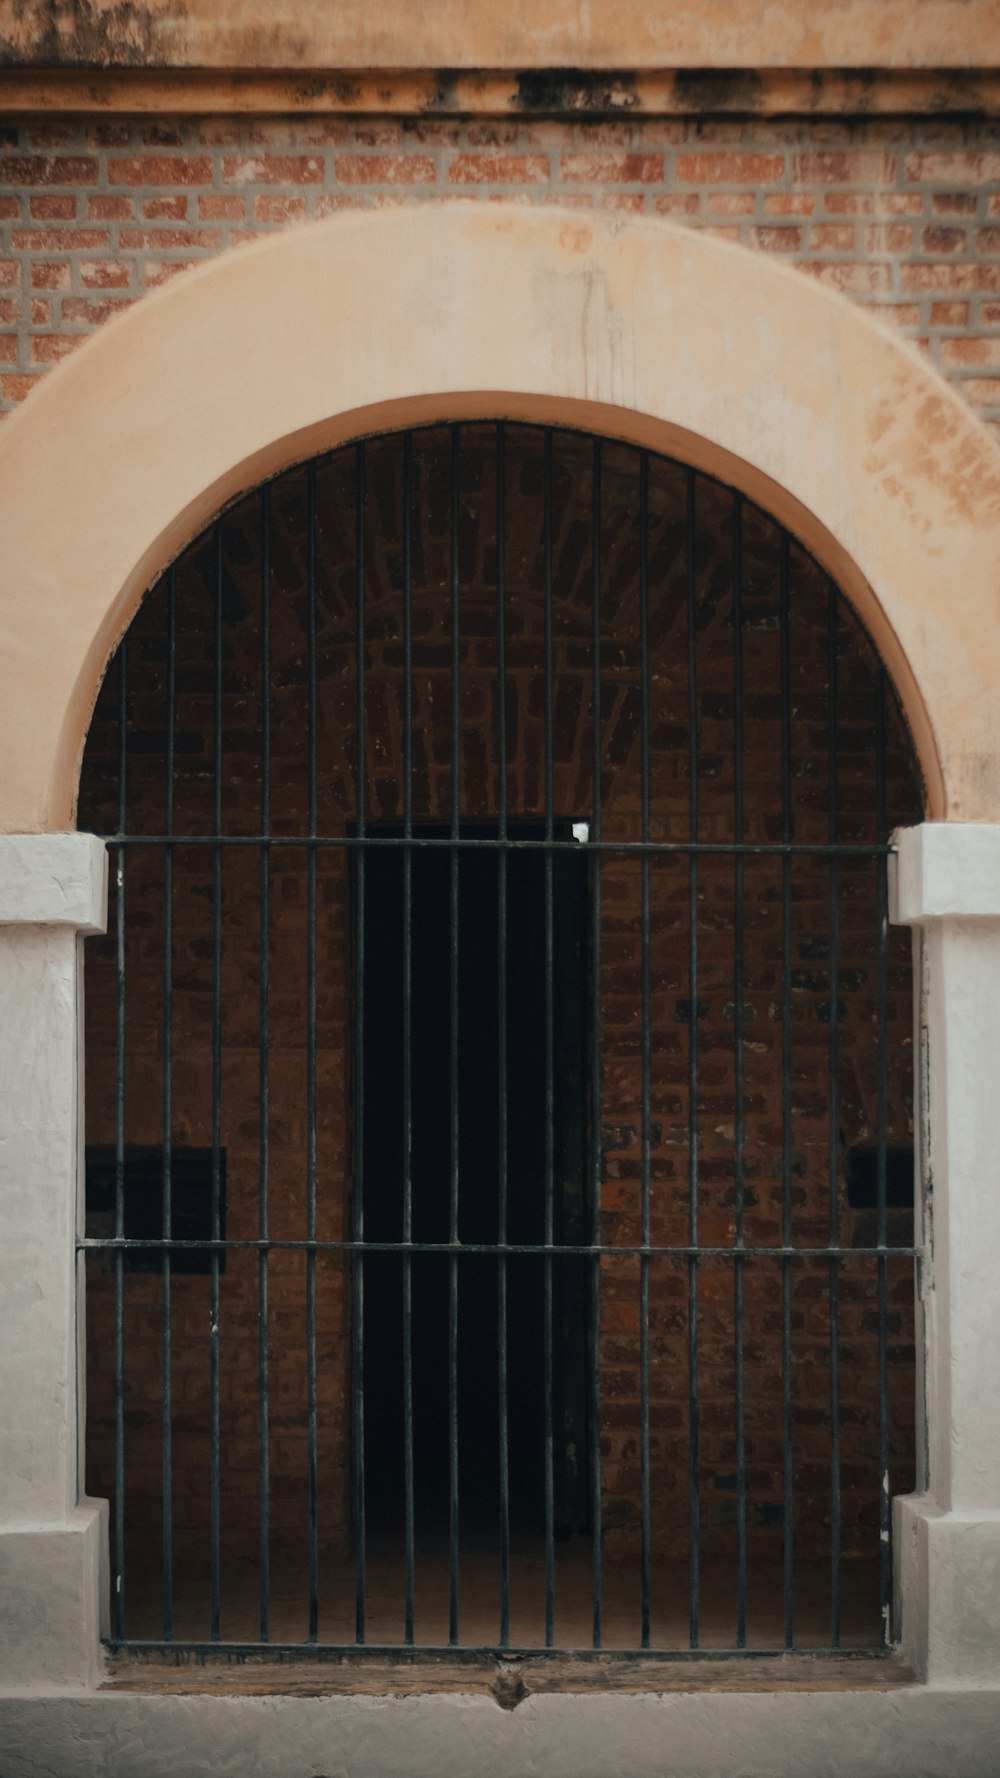 a gate in a brick building